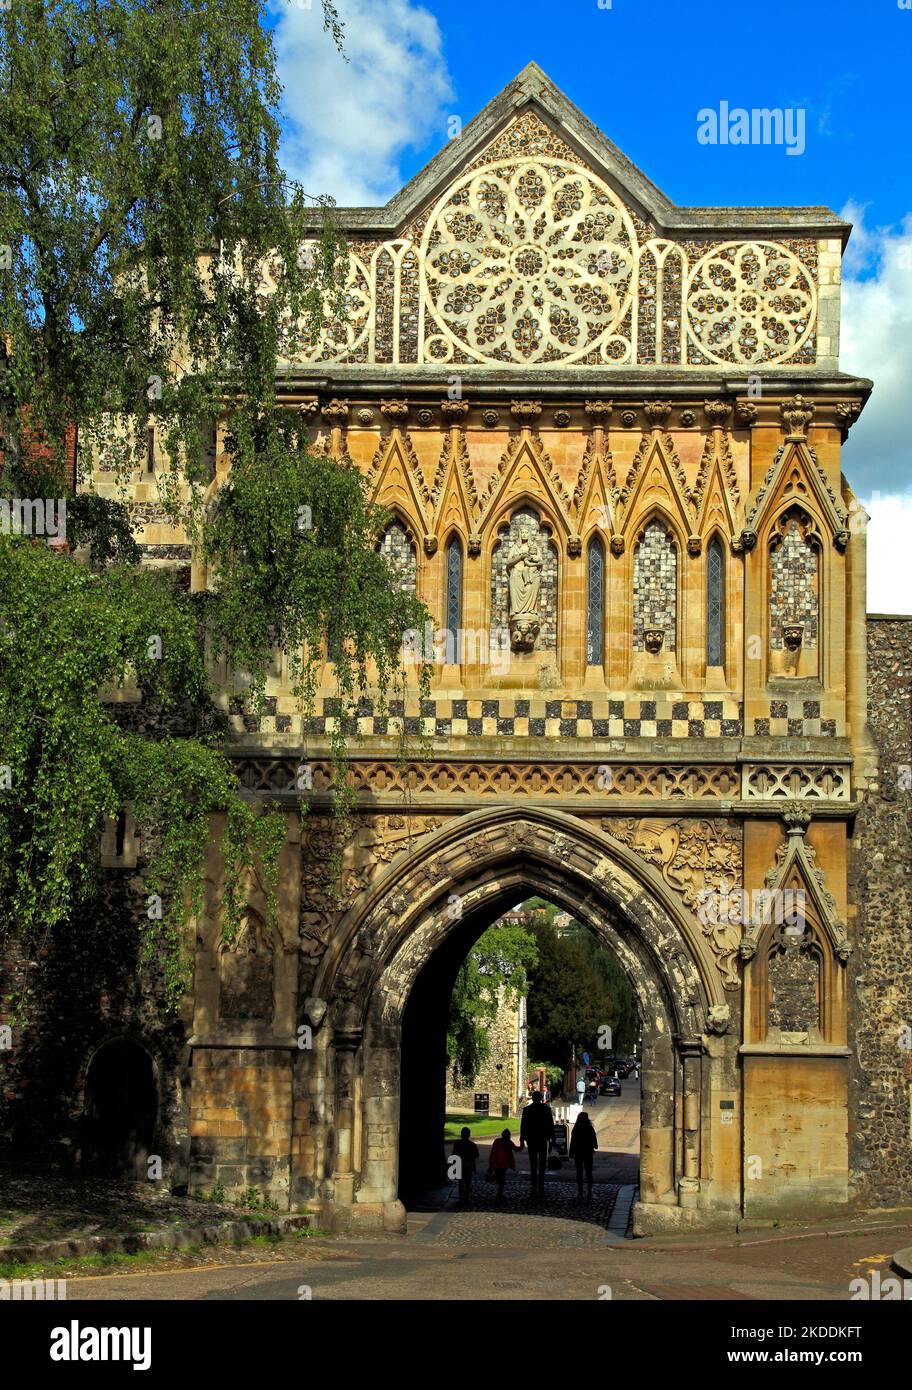 Norwich, St. Ethelbert's Gate, mittelalterlich, Eingang zum Cathedral-Viertel, Norfolk, England, Großbritannien Stockfoto